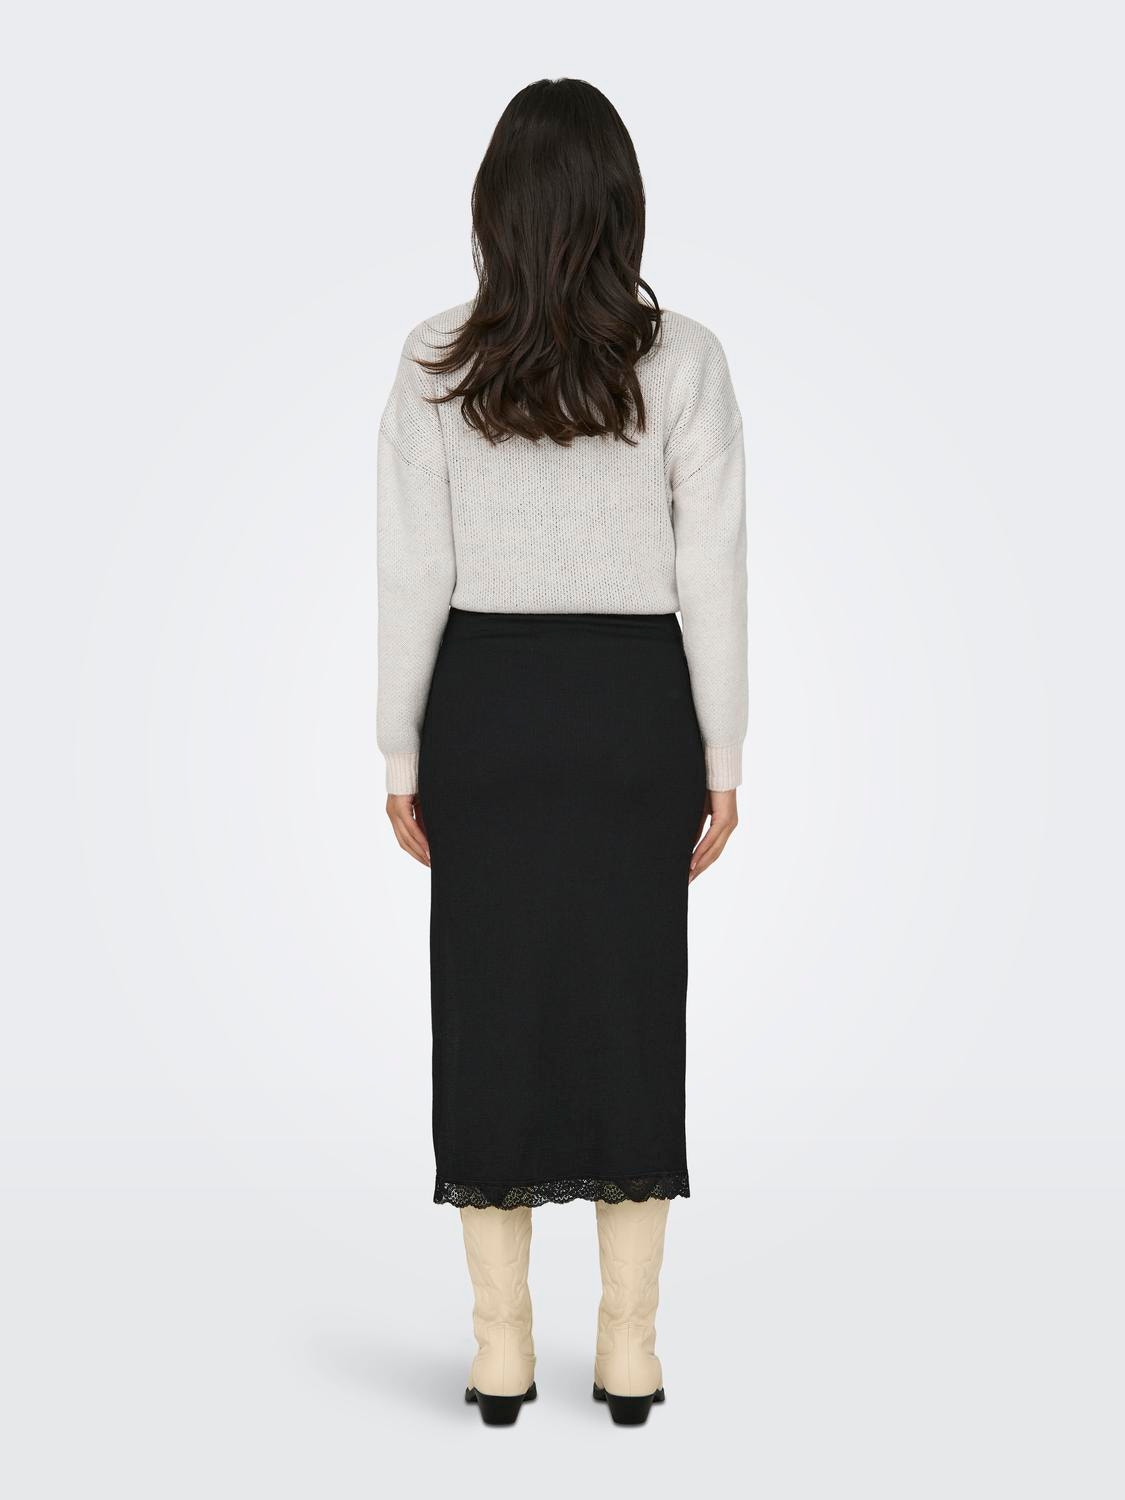 ONLY Midi skirt -Black - 15327279